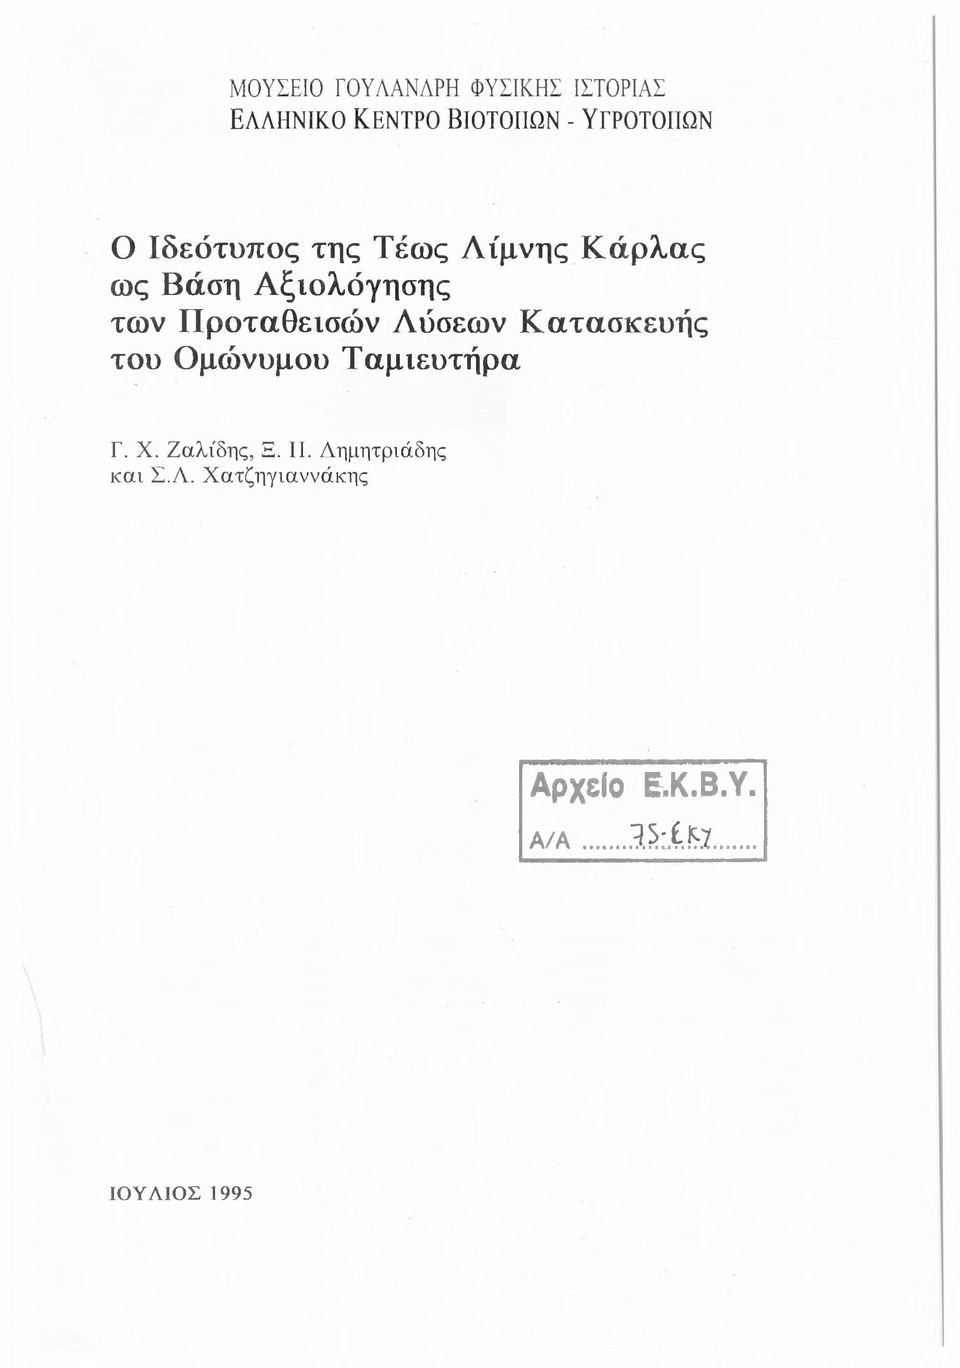 Προταθεισών Λύσεων Κατασκευής του Ομώνυμου Ταμιευτήρα Γ. X. Ζαλίδης, Ξ.